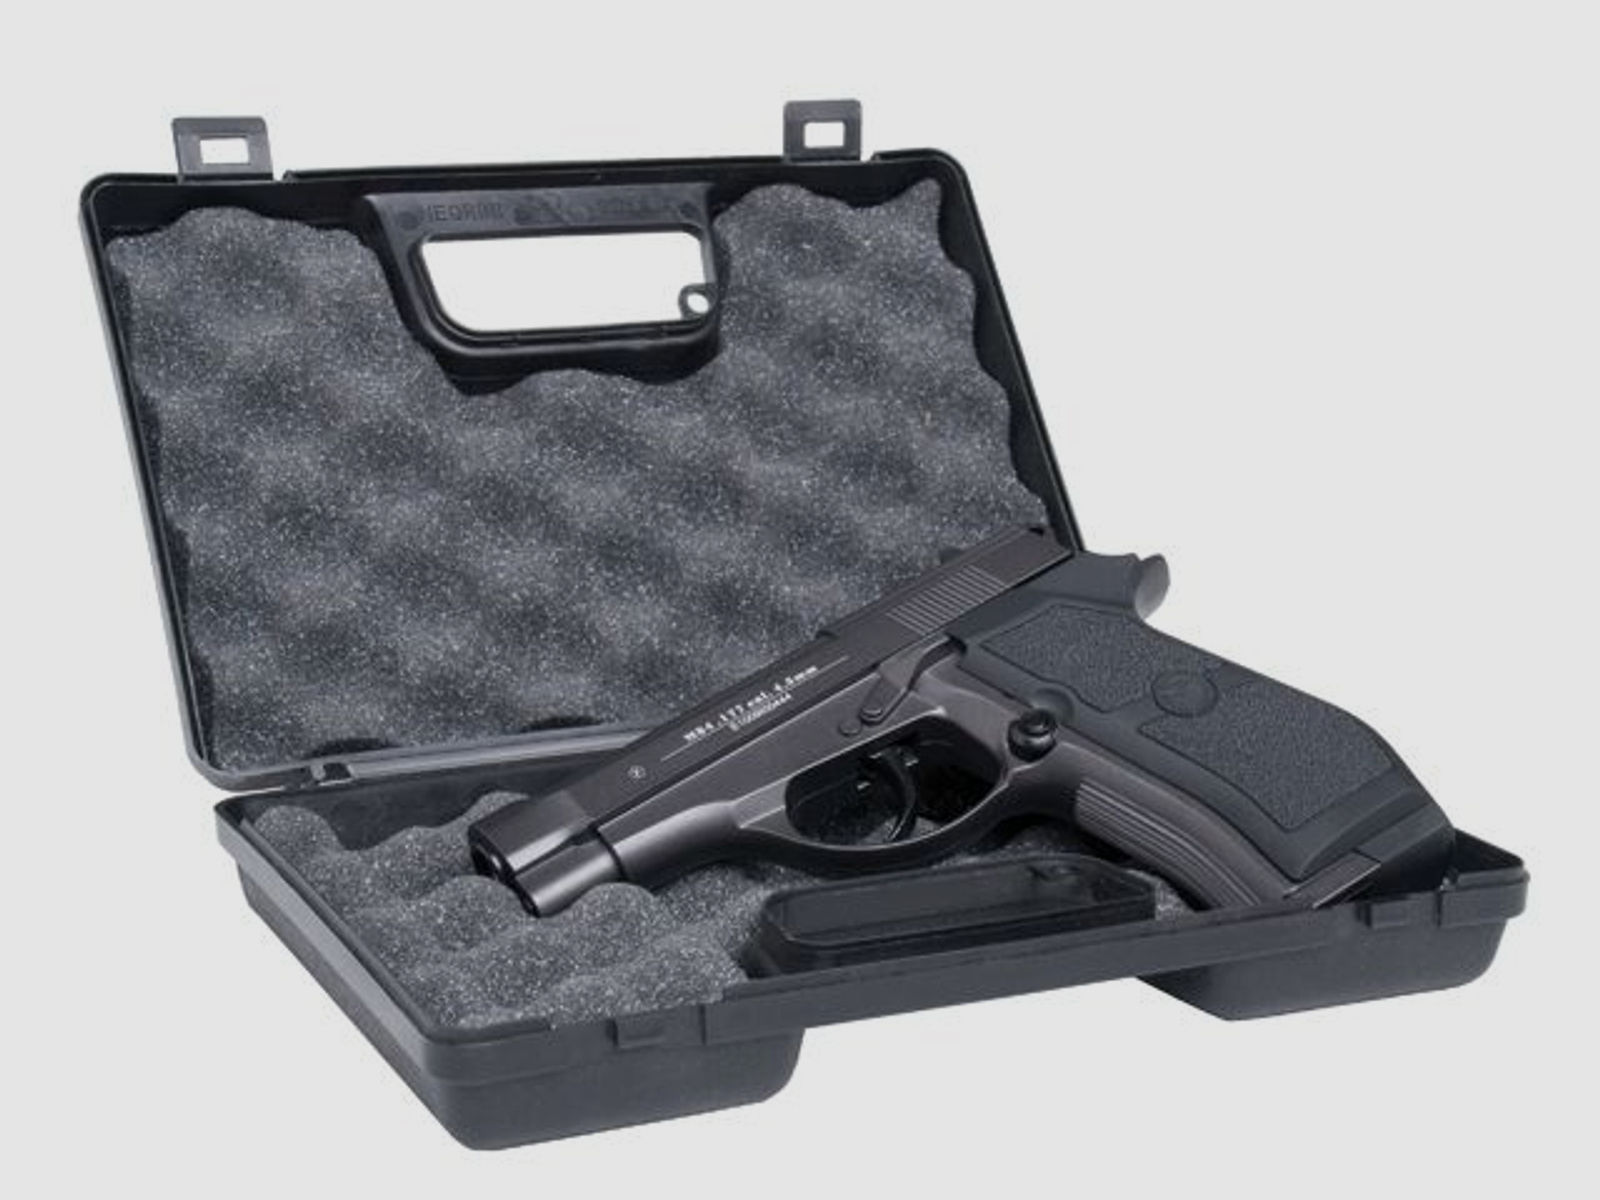 GSG Pistolen Koffer SMALL - Transportbehältnis Kurzwaffe Pistole Revolver 22cm x 14cm abschließbar